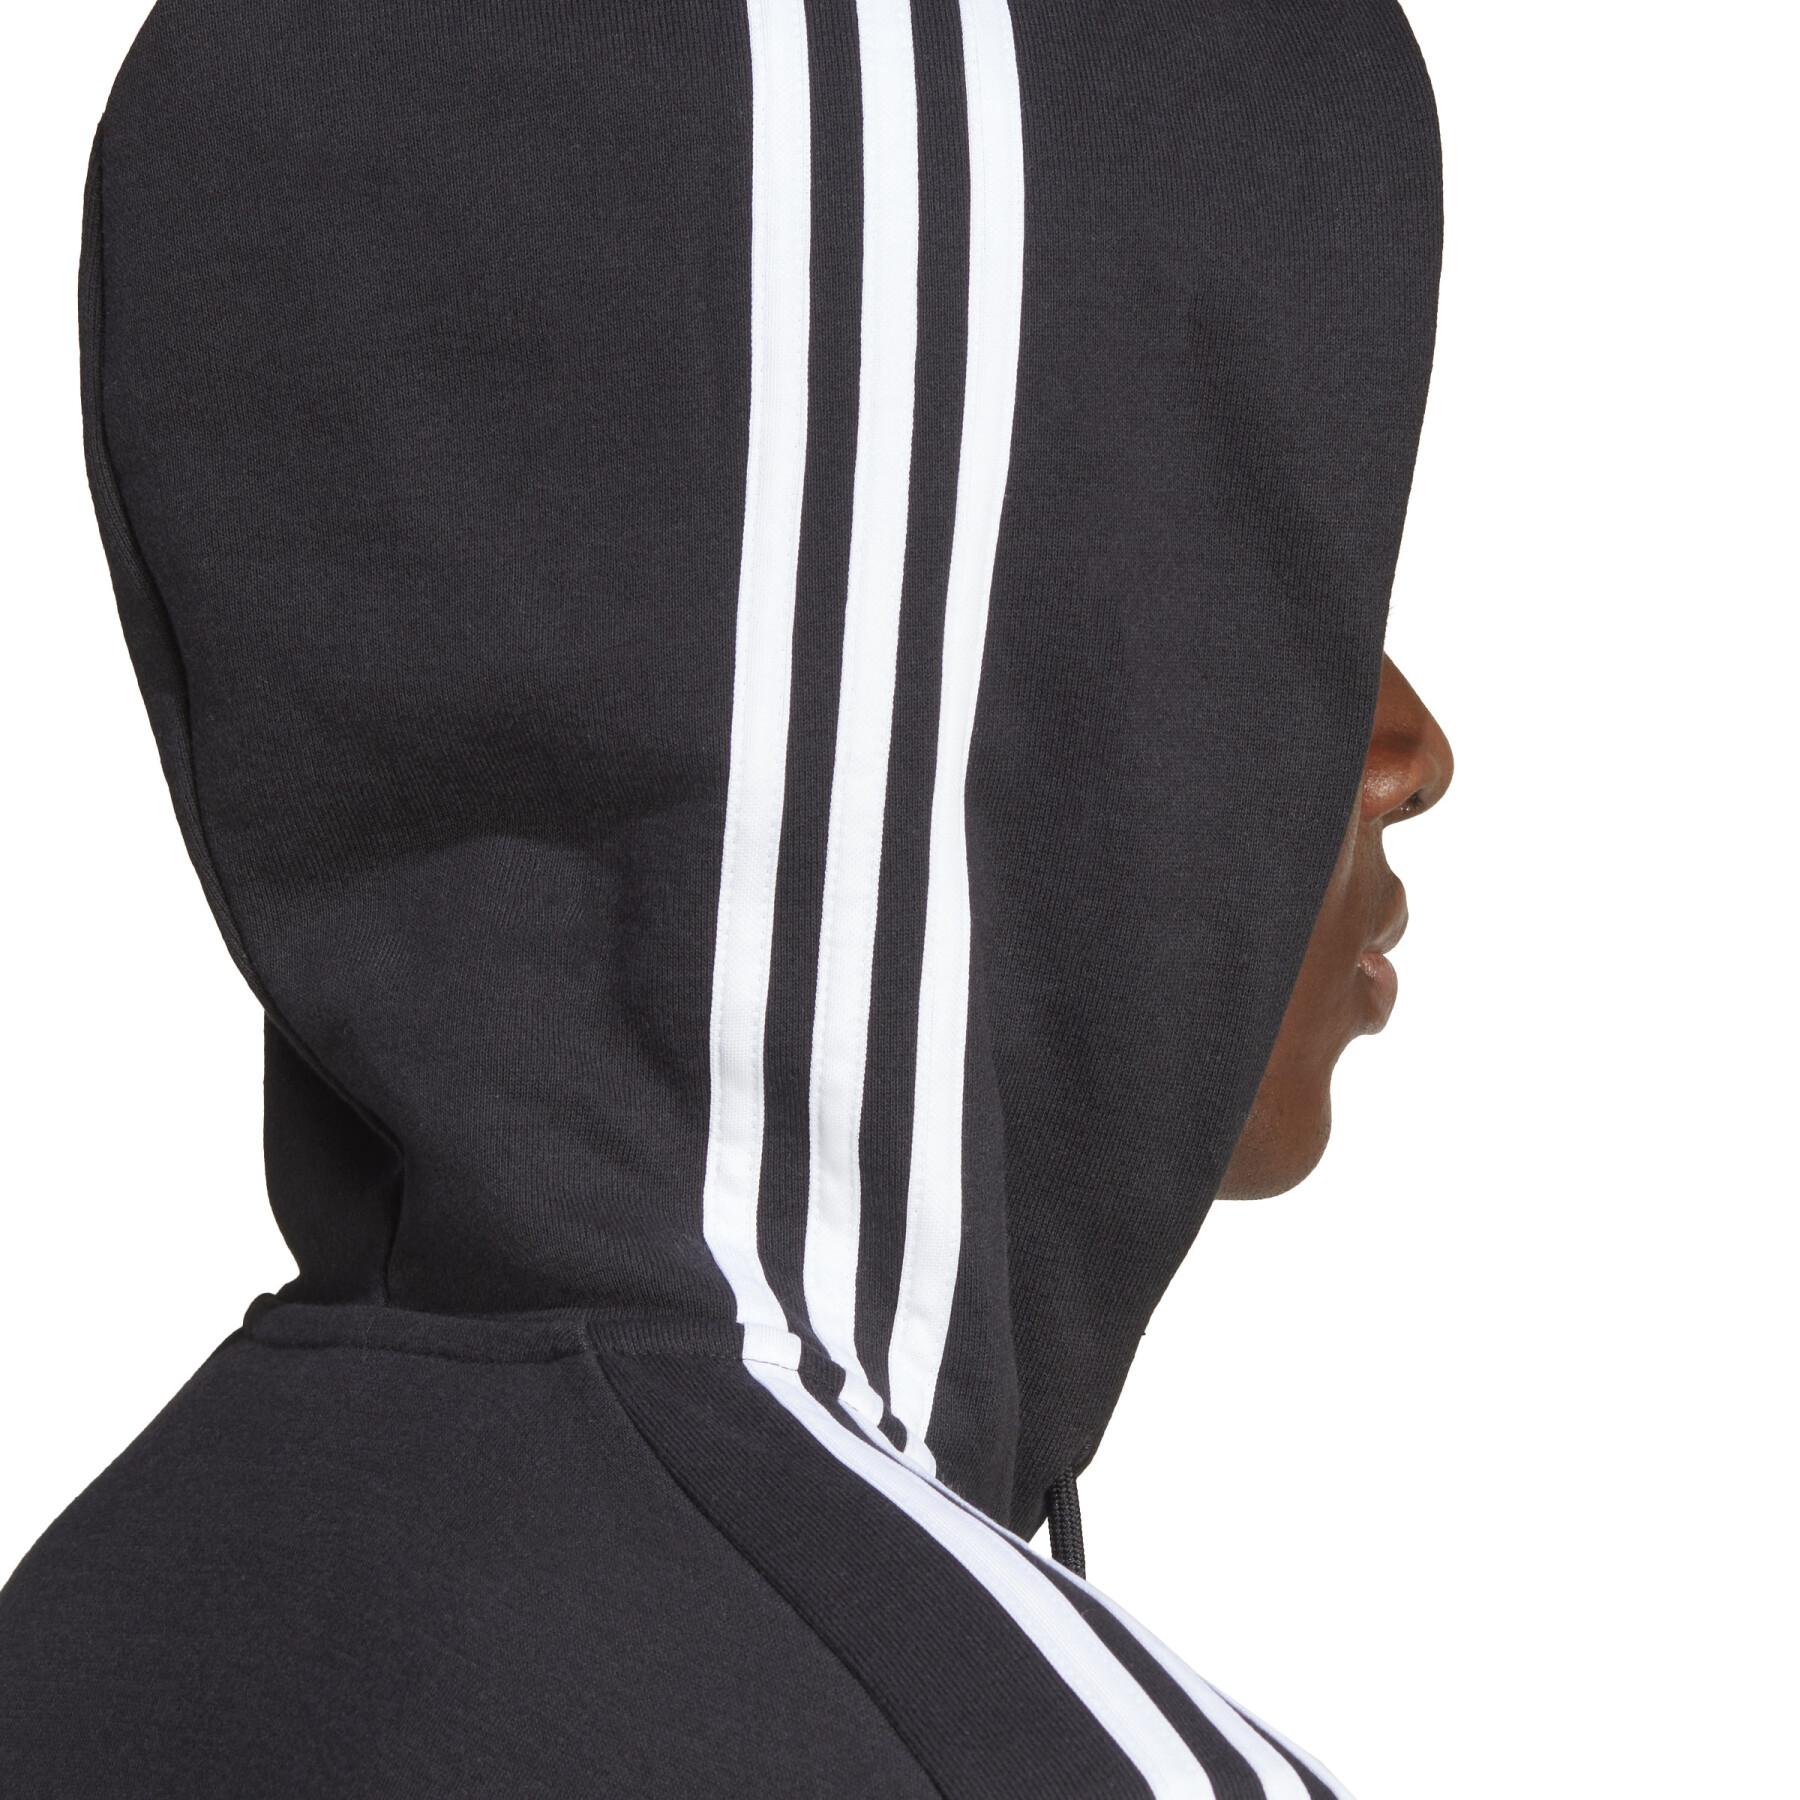 Sweatshirt fleece met capuchon adidas Essentials 3-Stripes